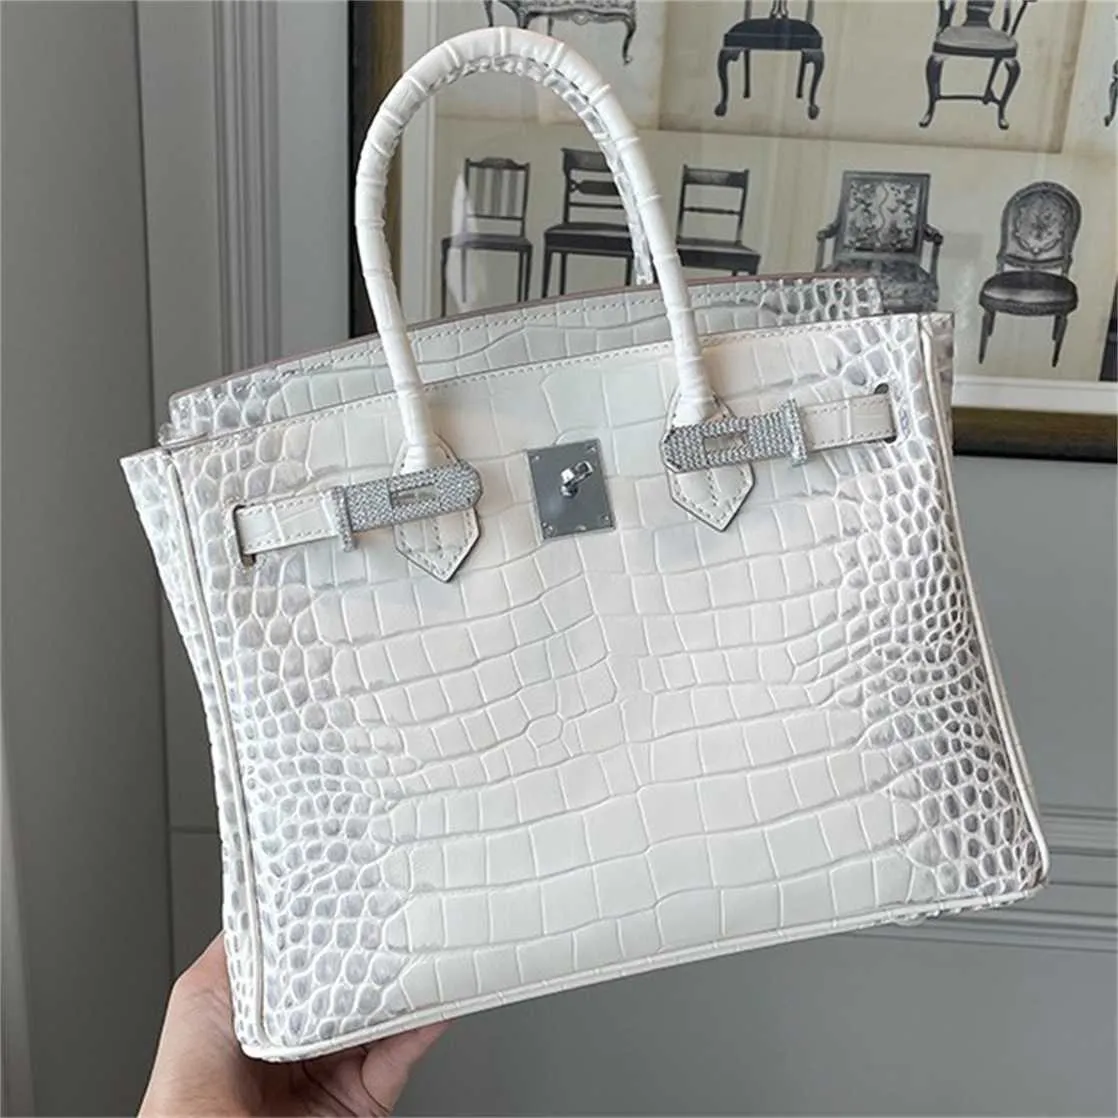 Skórzana designerska torba skórzana z himalajskim białym krokodylem torba na ramię przenośna torba damska